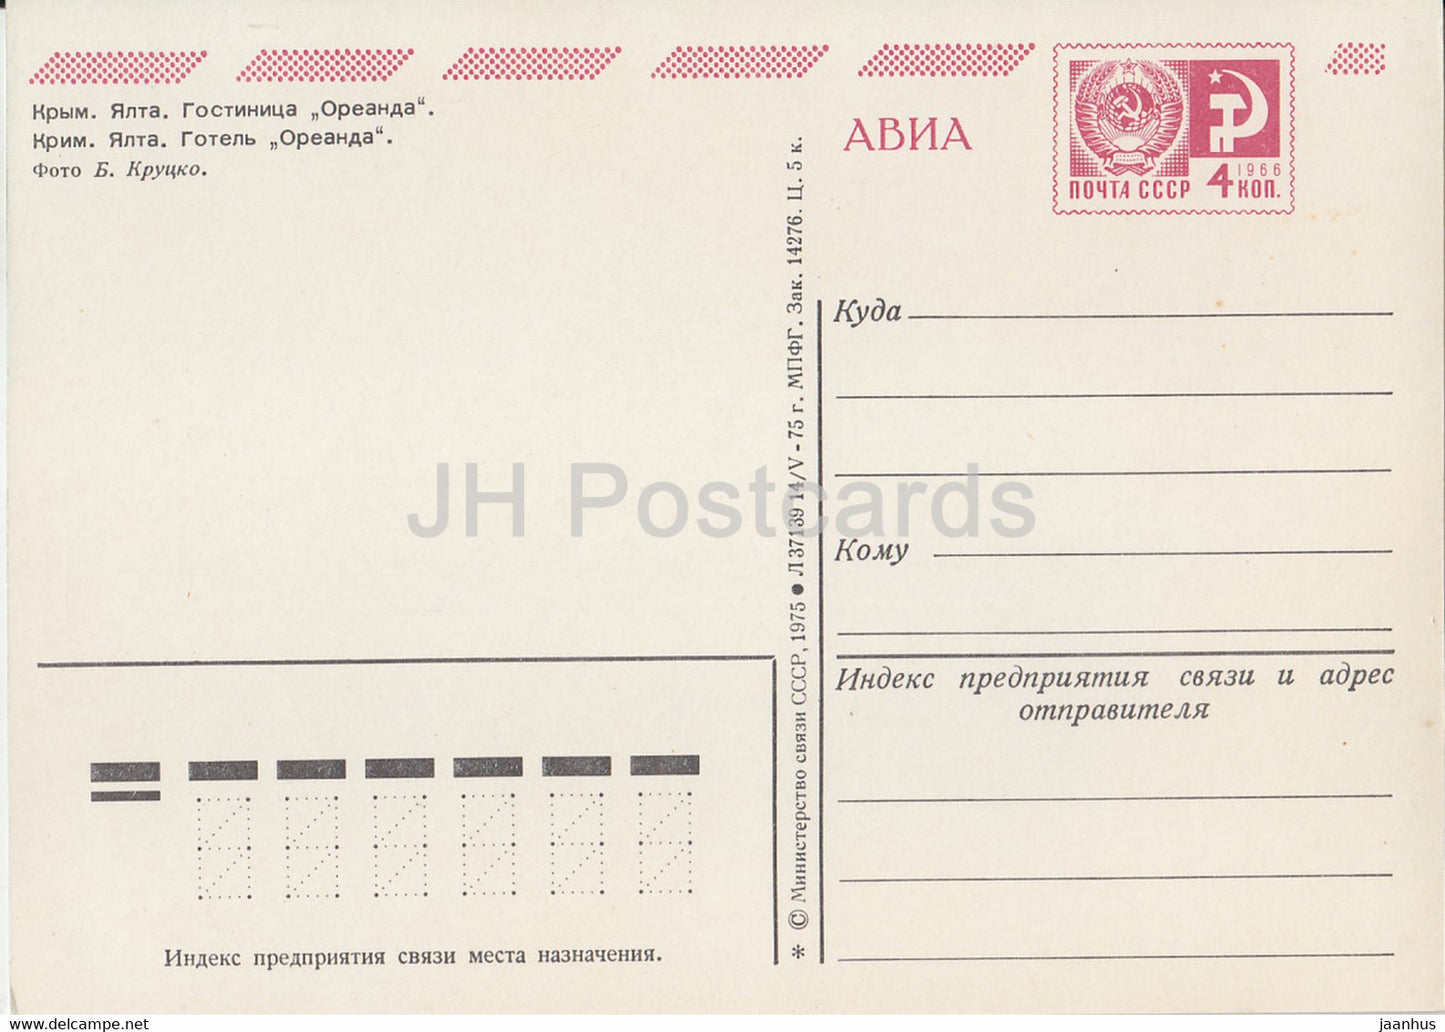 Crimea - Yalta - hotel Oreanda - AVIA - postal stationery - 1975 - Ukraine USSR - unused